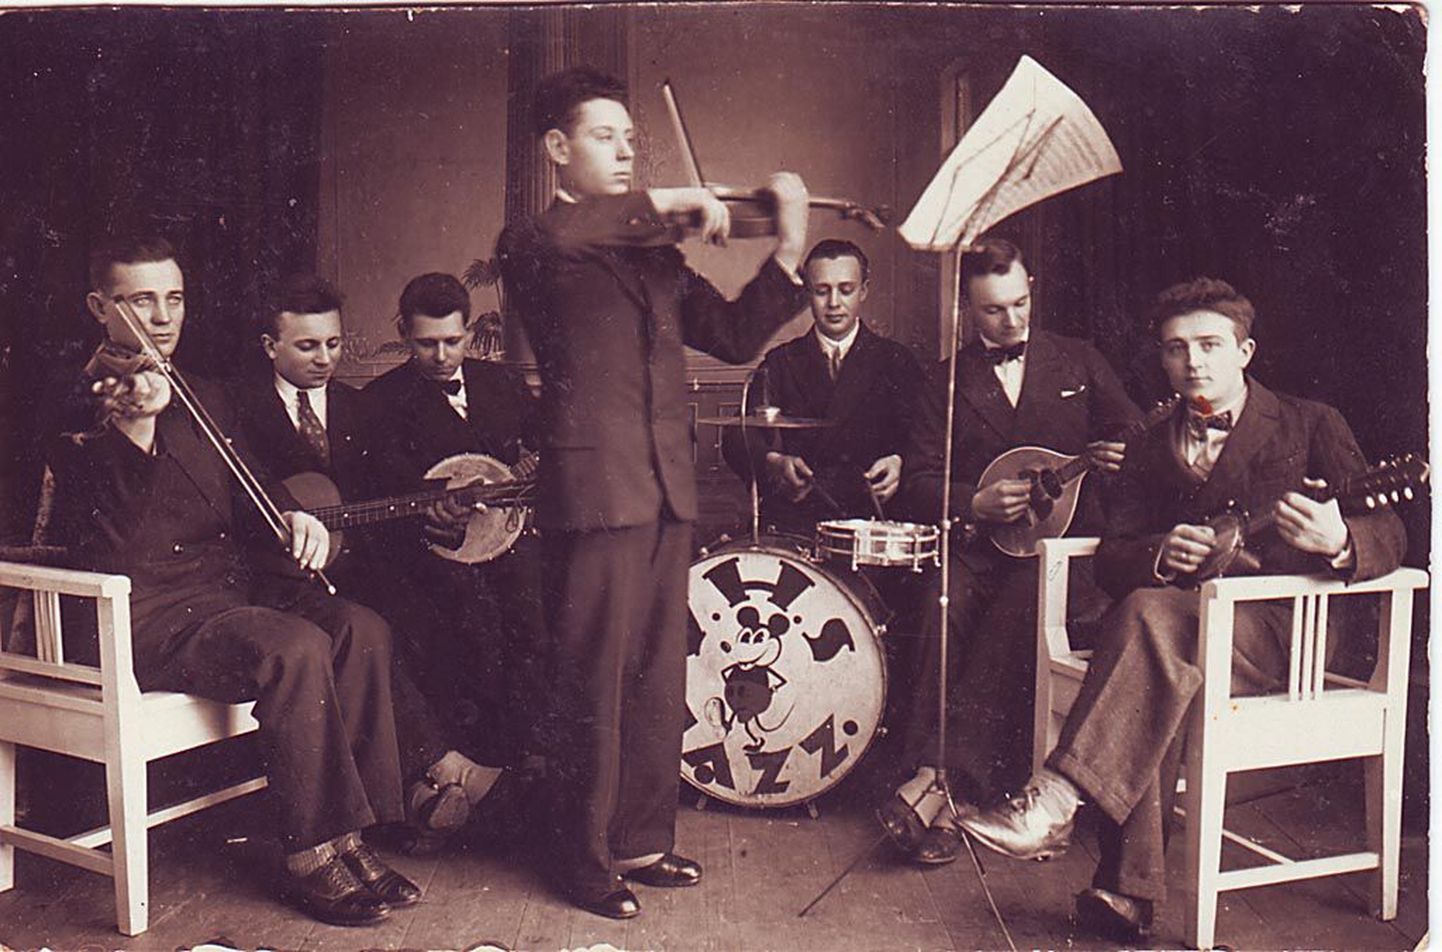 Voltveti mõisa häärberile 1939. aastal peale ehitatud korruse pööningult päästsid maali kohalikud orkestrandid, kes tõid selle mandoliinimängija Artur Parve (pildil paremalt teine) suurde ametikorterisse, kus kord nädalas harjutamas käidi.